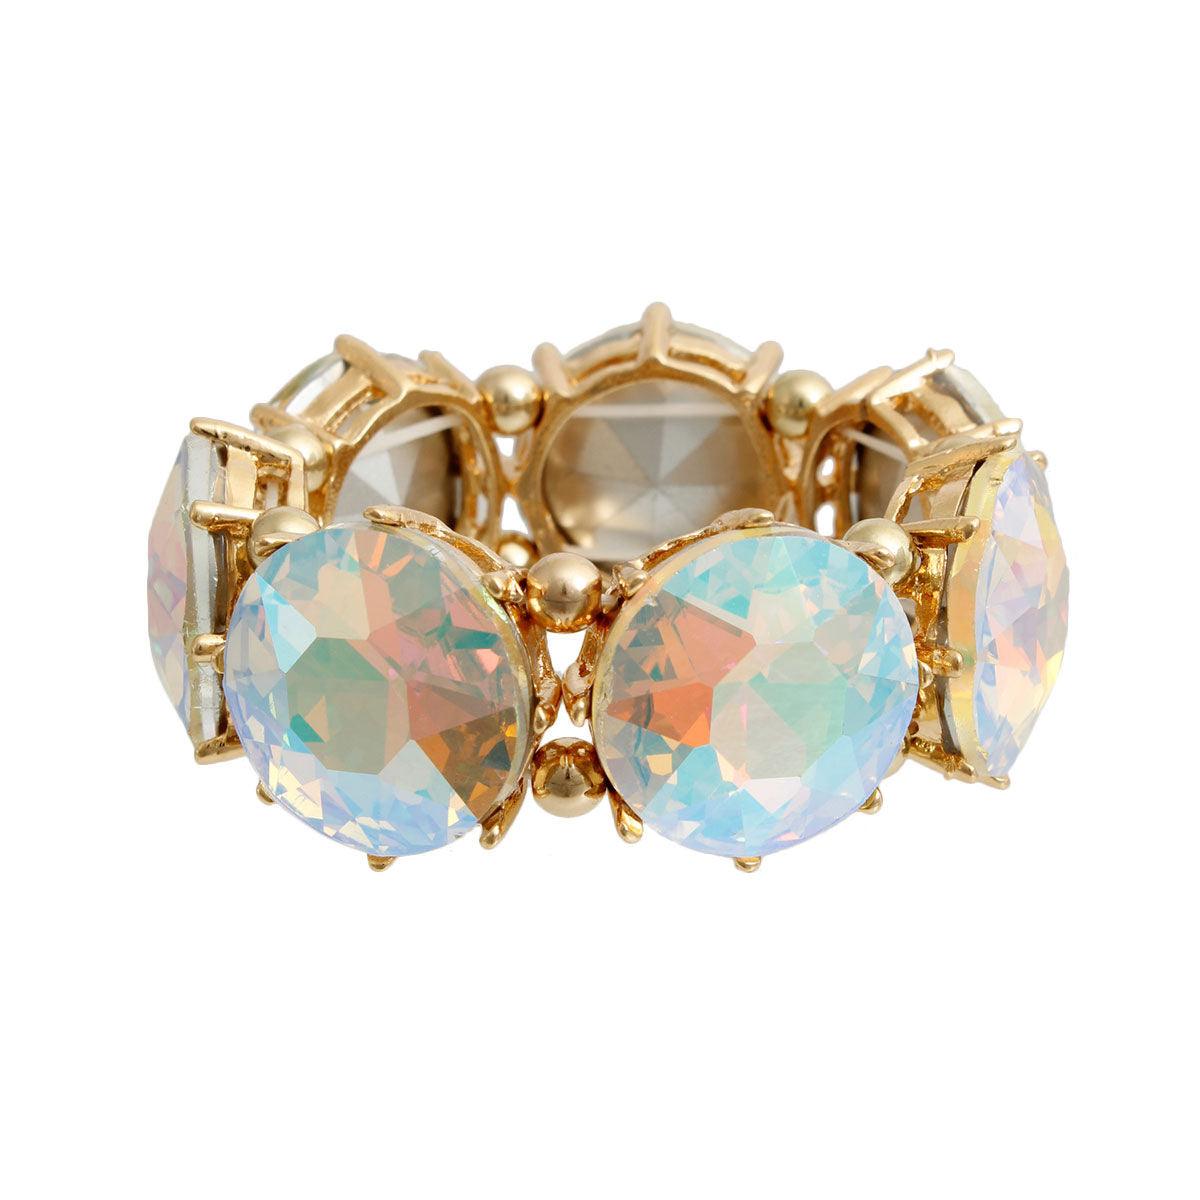 Aurora Borealis Bracelet: Gold Plated & Ready to Sparkle